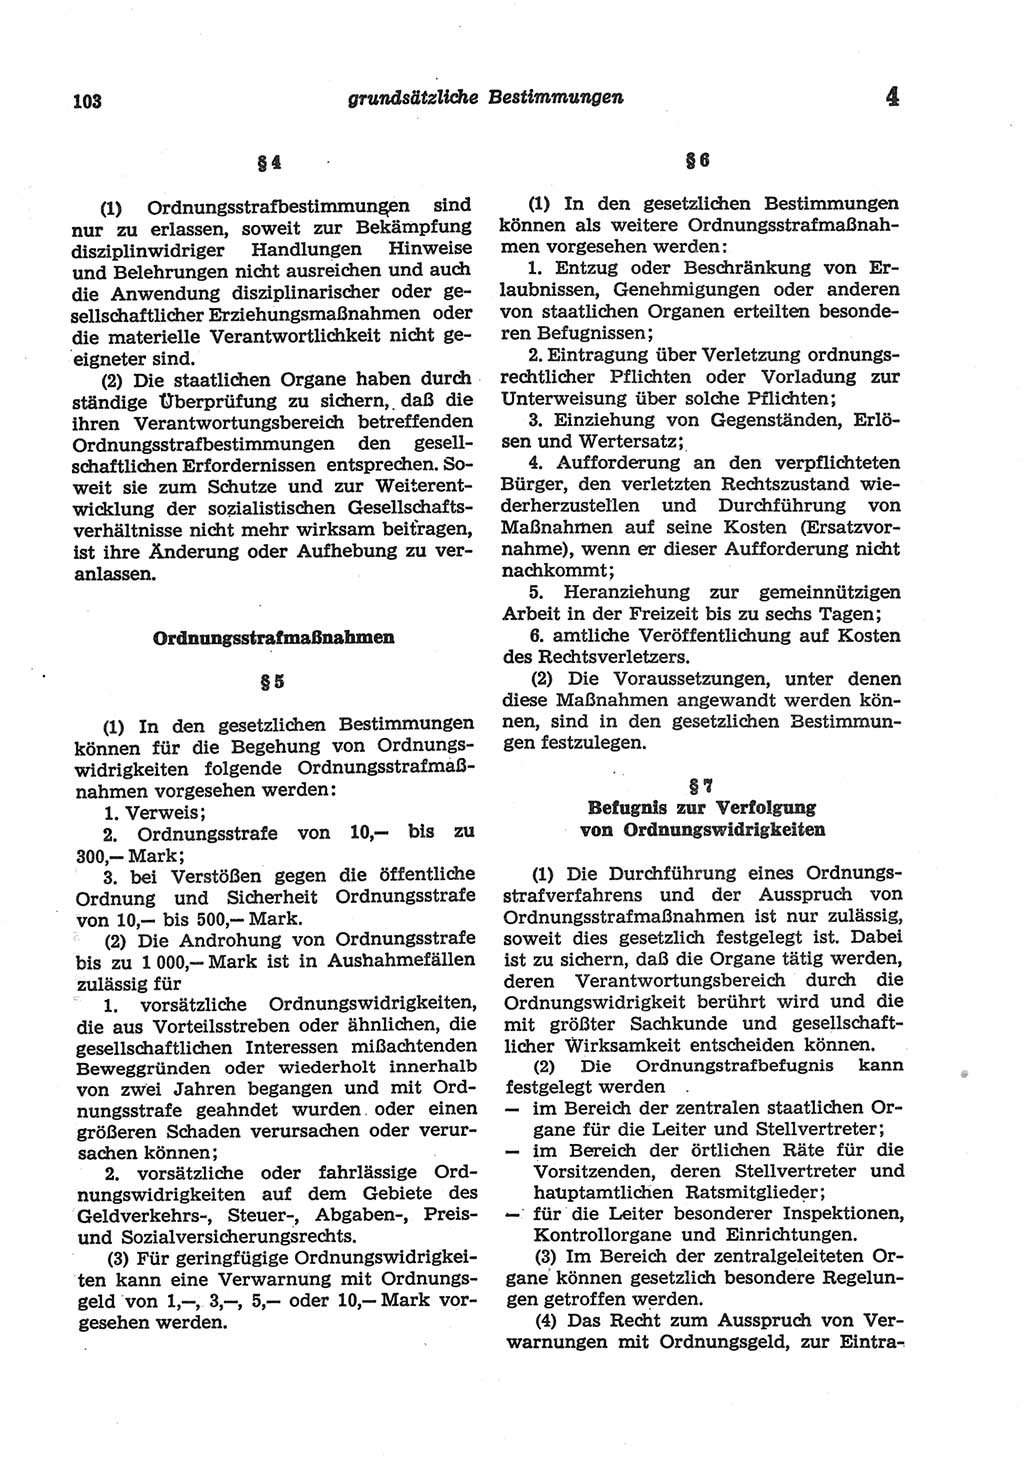 Strafgesetzbuch (StGB) der Deutschen Demokratischen Republik (DDR) und angrenzende Gesetze und Bestimmungen 1977, Seite 103 (StGB DDR Ges. Best. 1977, S. 103)